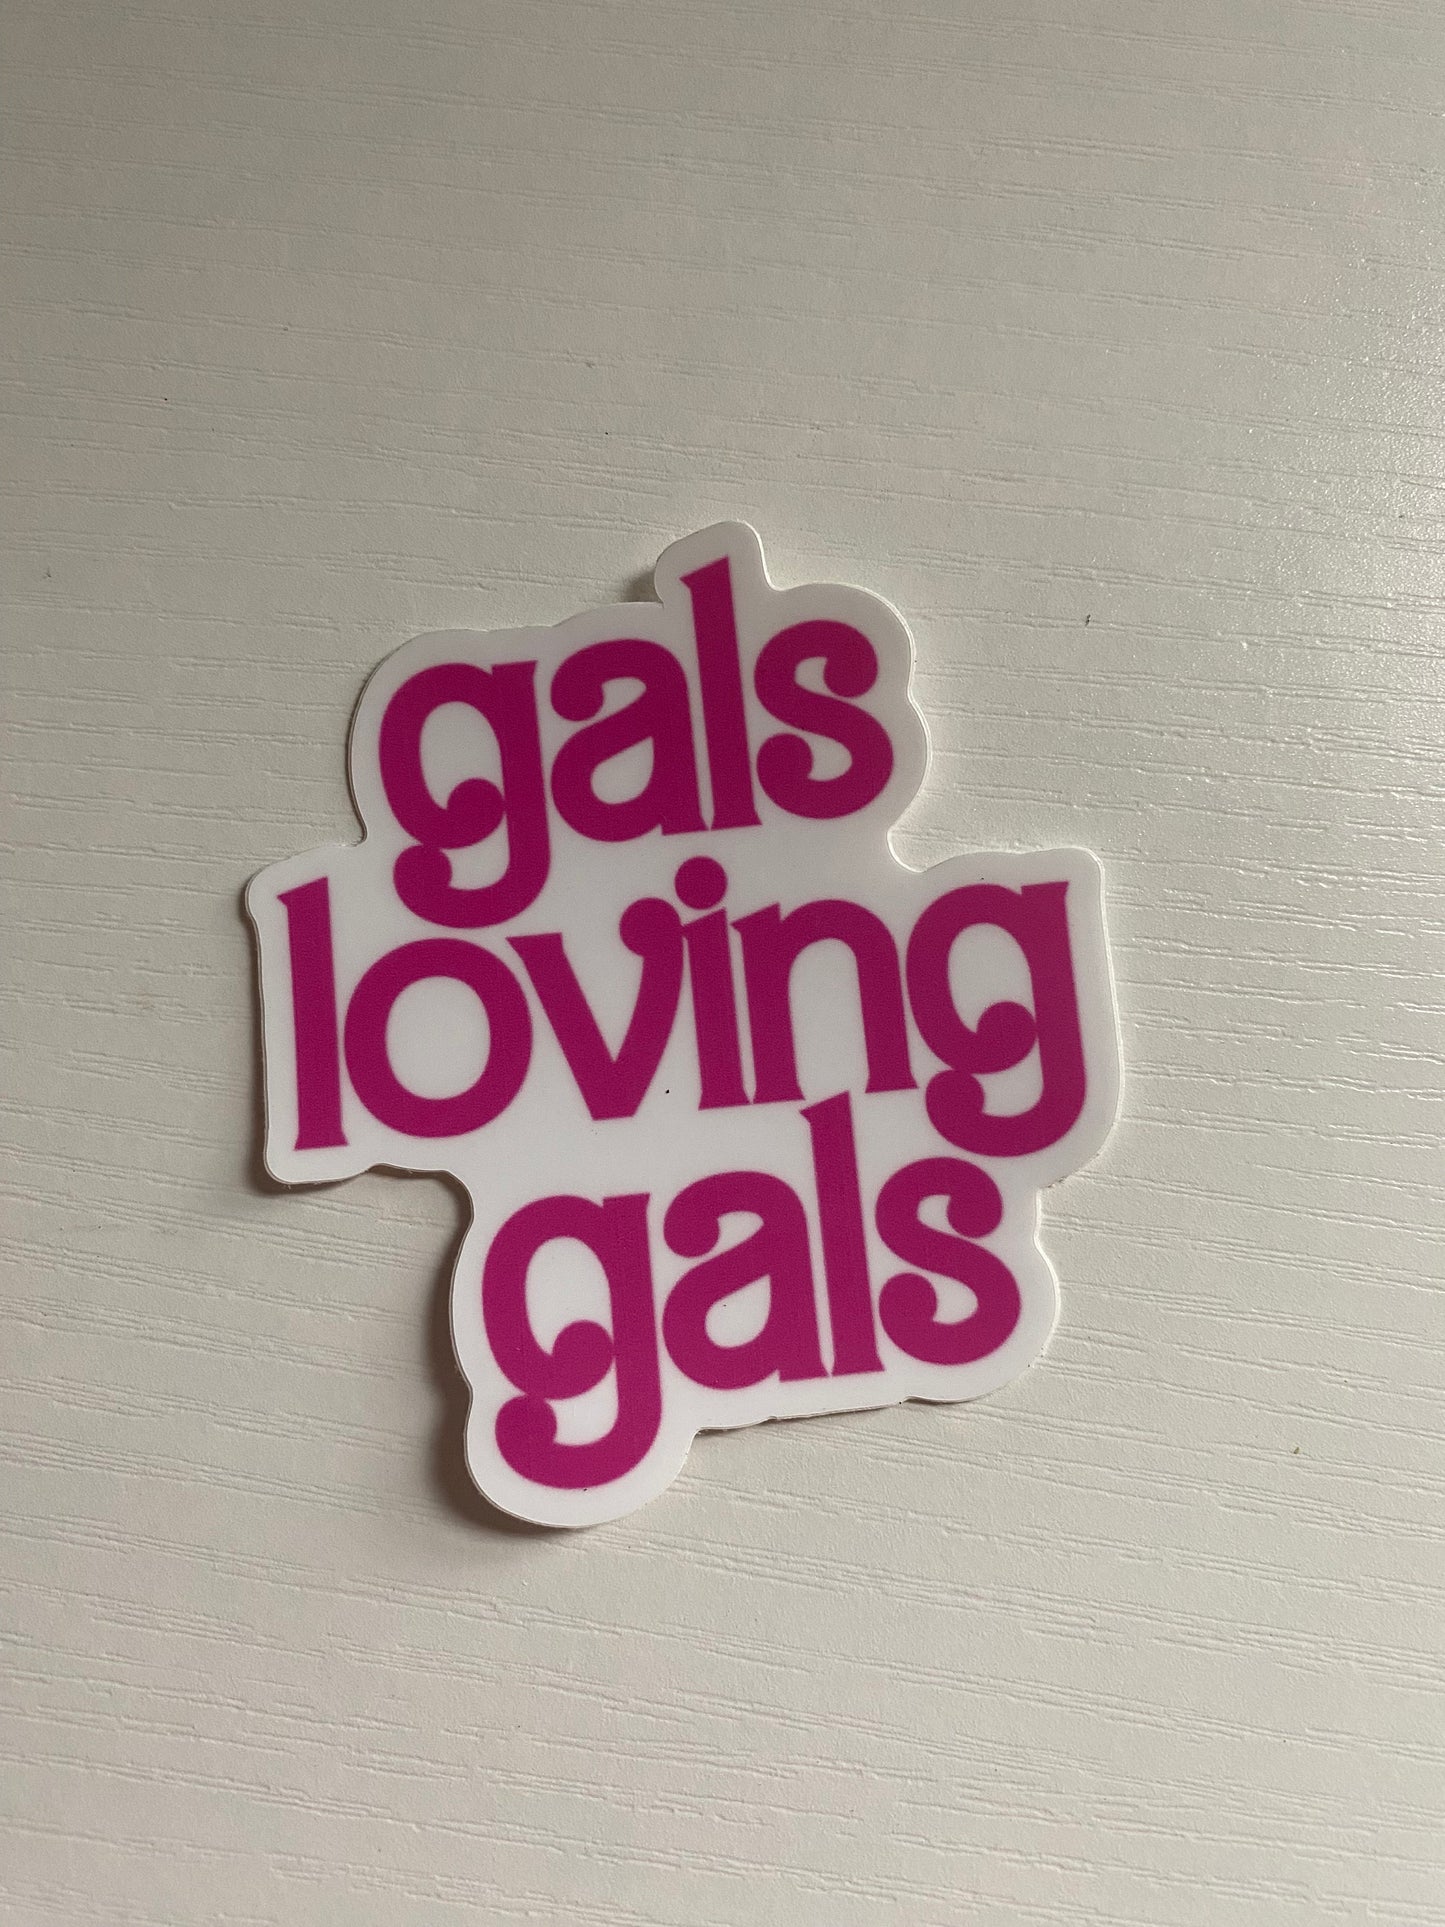 Gals loving Gals Sticker, Lesbian Pride Sticker, LGBTQ+ Pride, Barbie theme, Waterbottle Sticker, Laptop sticker, Funny sticker